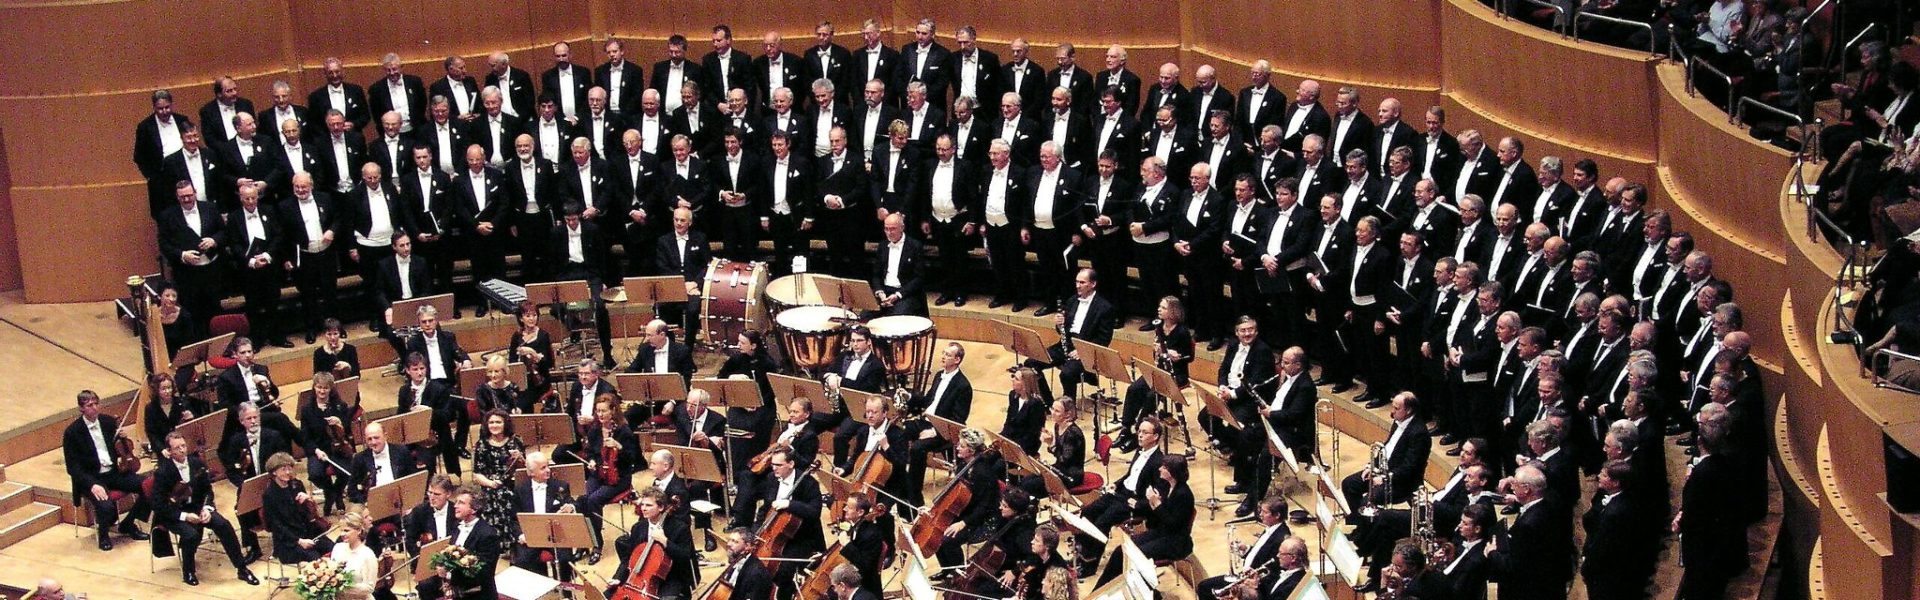 Kölner Männer-Gesang-Verein beim Schlussapplaus in der Kölner Philharmonie